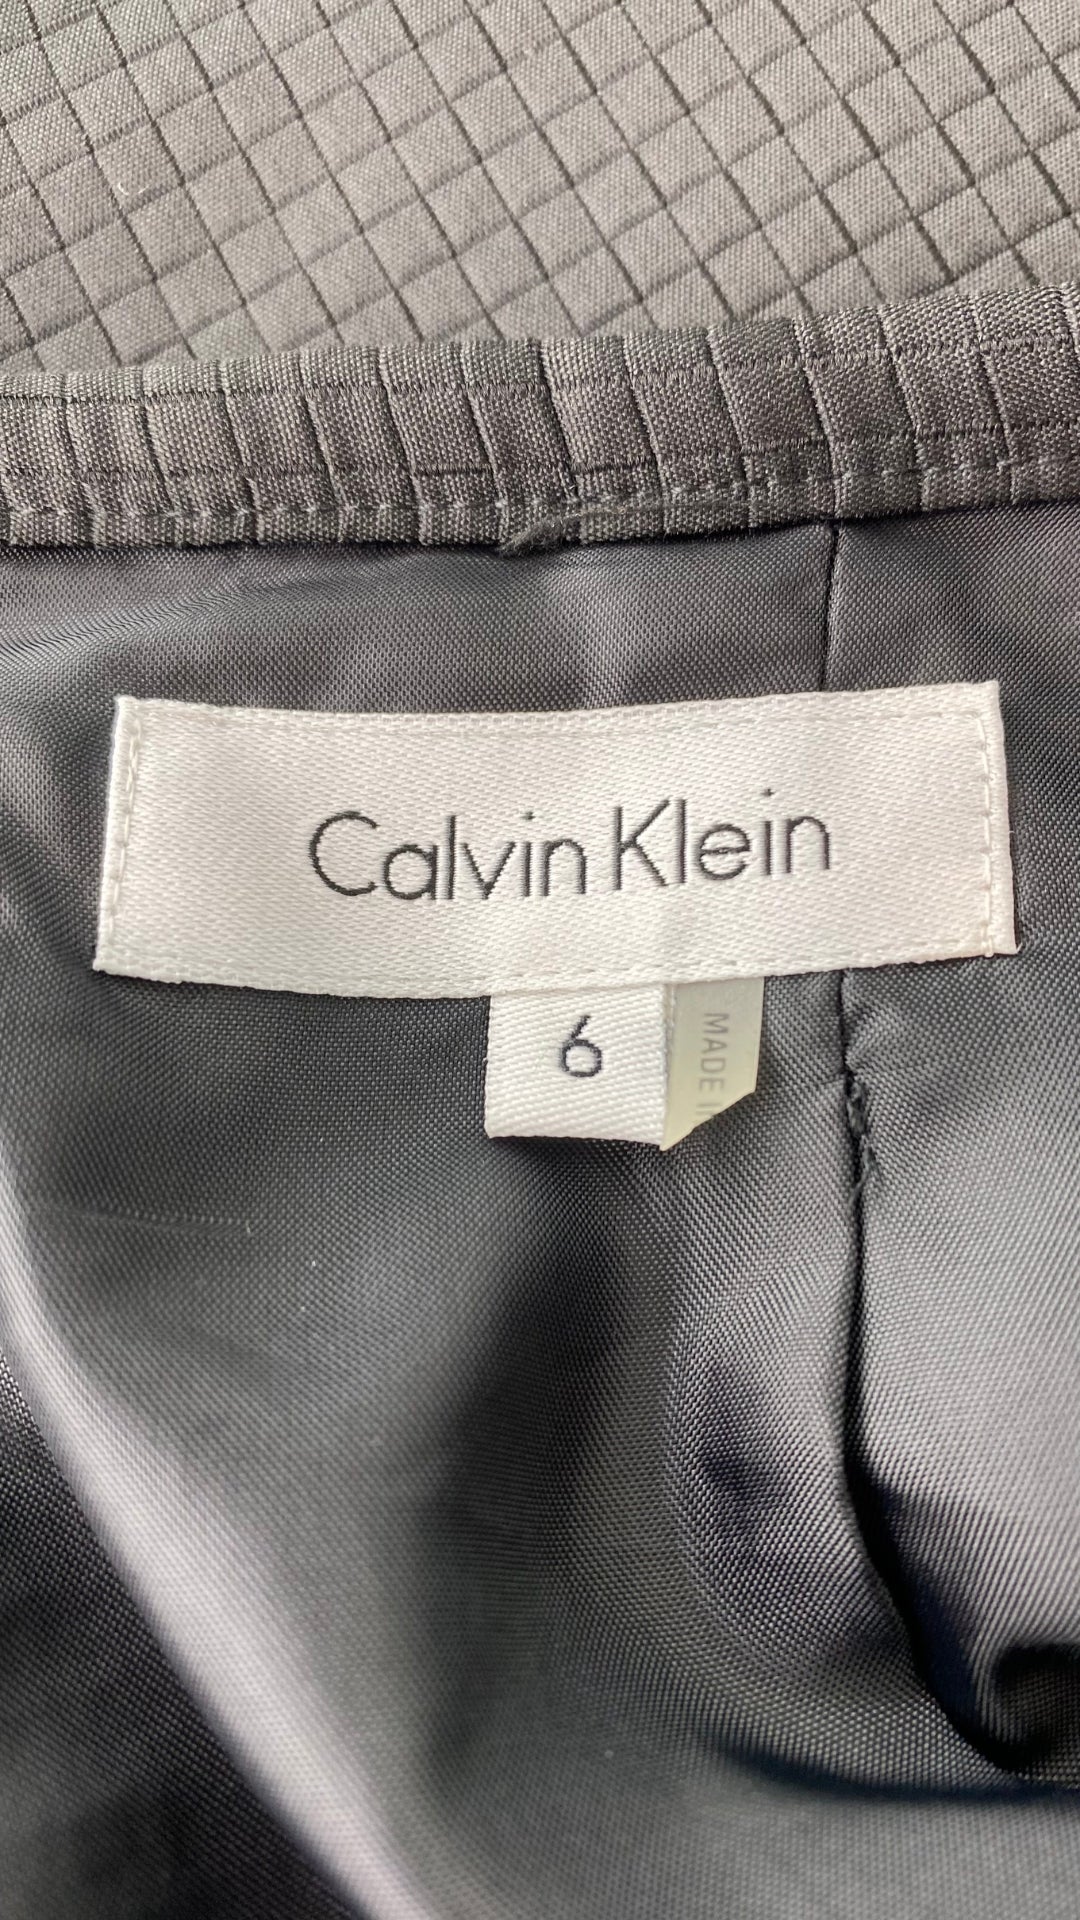 Jupe crayon noire texturée Calvin Klein, taille 6. Vue de l'étiquette de marque et taille.